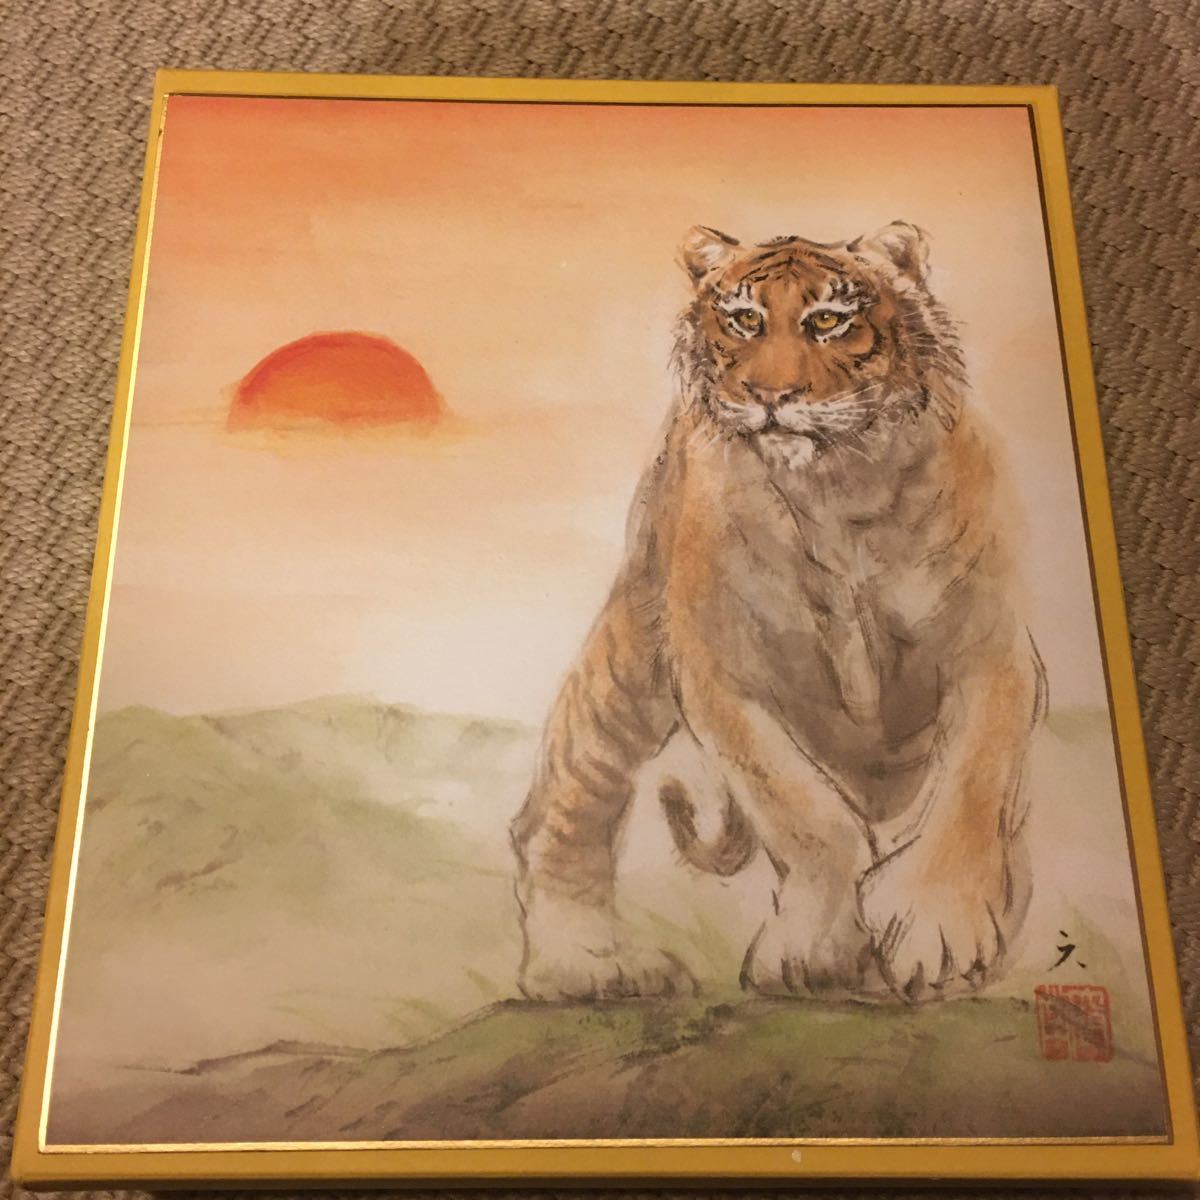 Cómprelo ahora Fujiwara Rokugendo Papel de color del zodiaco Reproducción de tigre Pintura de papel de color Pintura japonesa Tigre del zodiaco Tarifa de envío \230, obra de arte, libro, papel coloreado